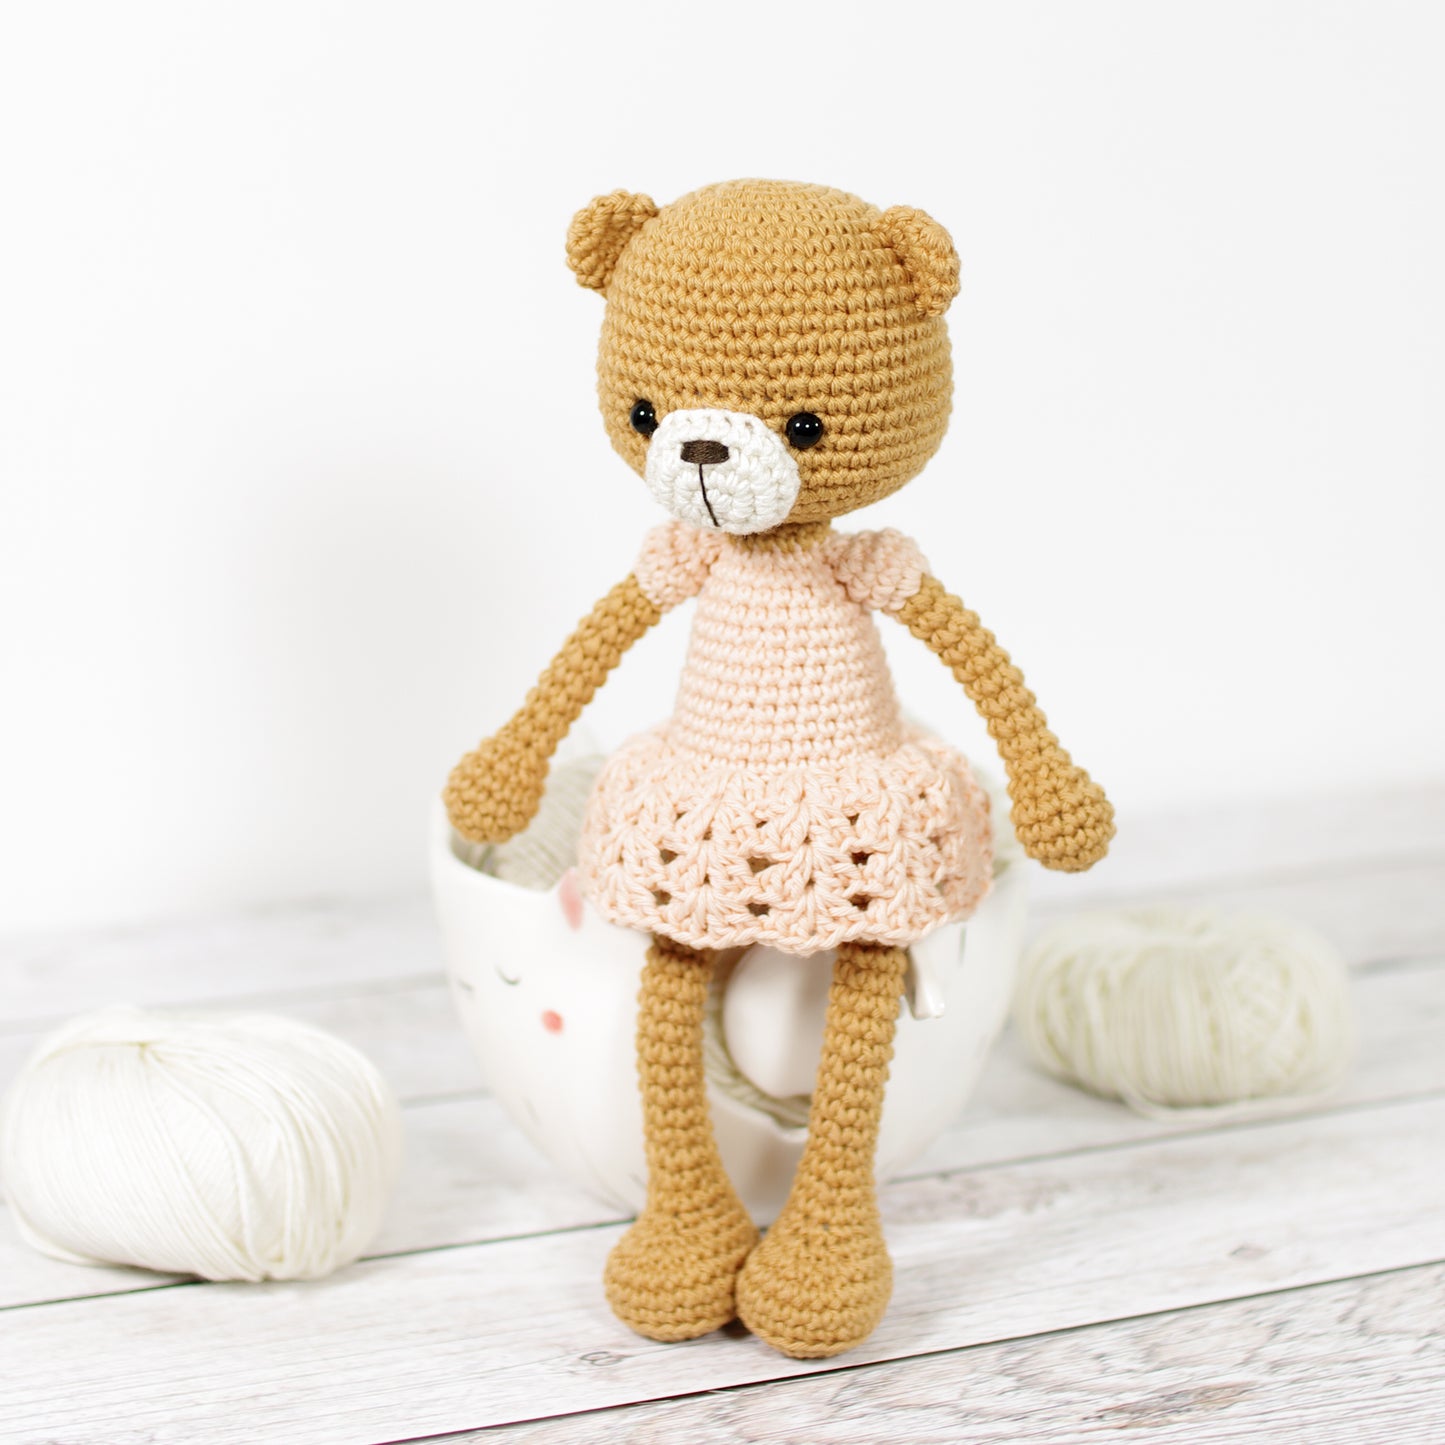 PATTERN: Poppy the Teddy Bear